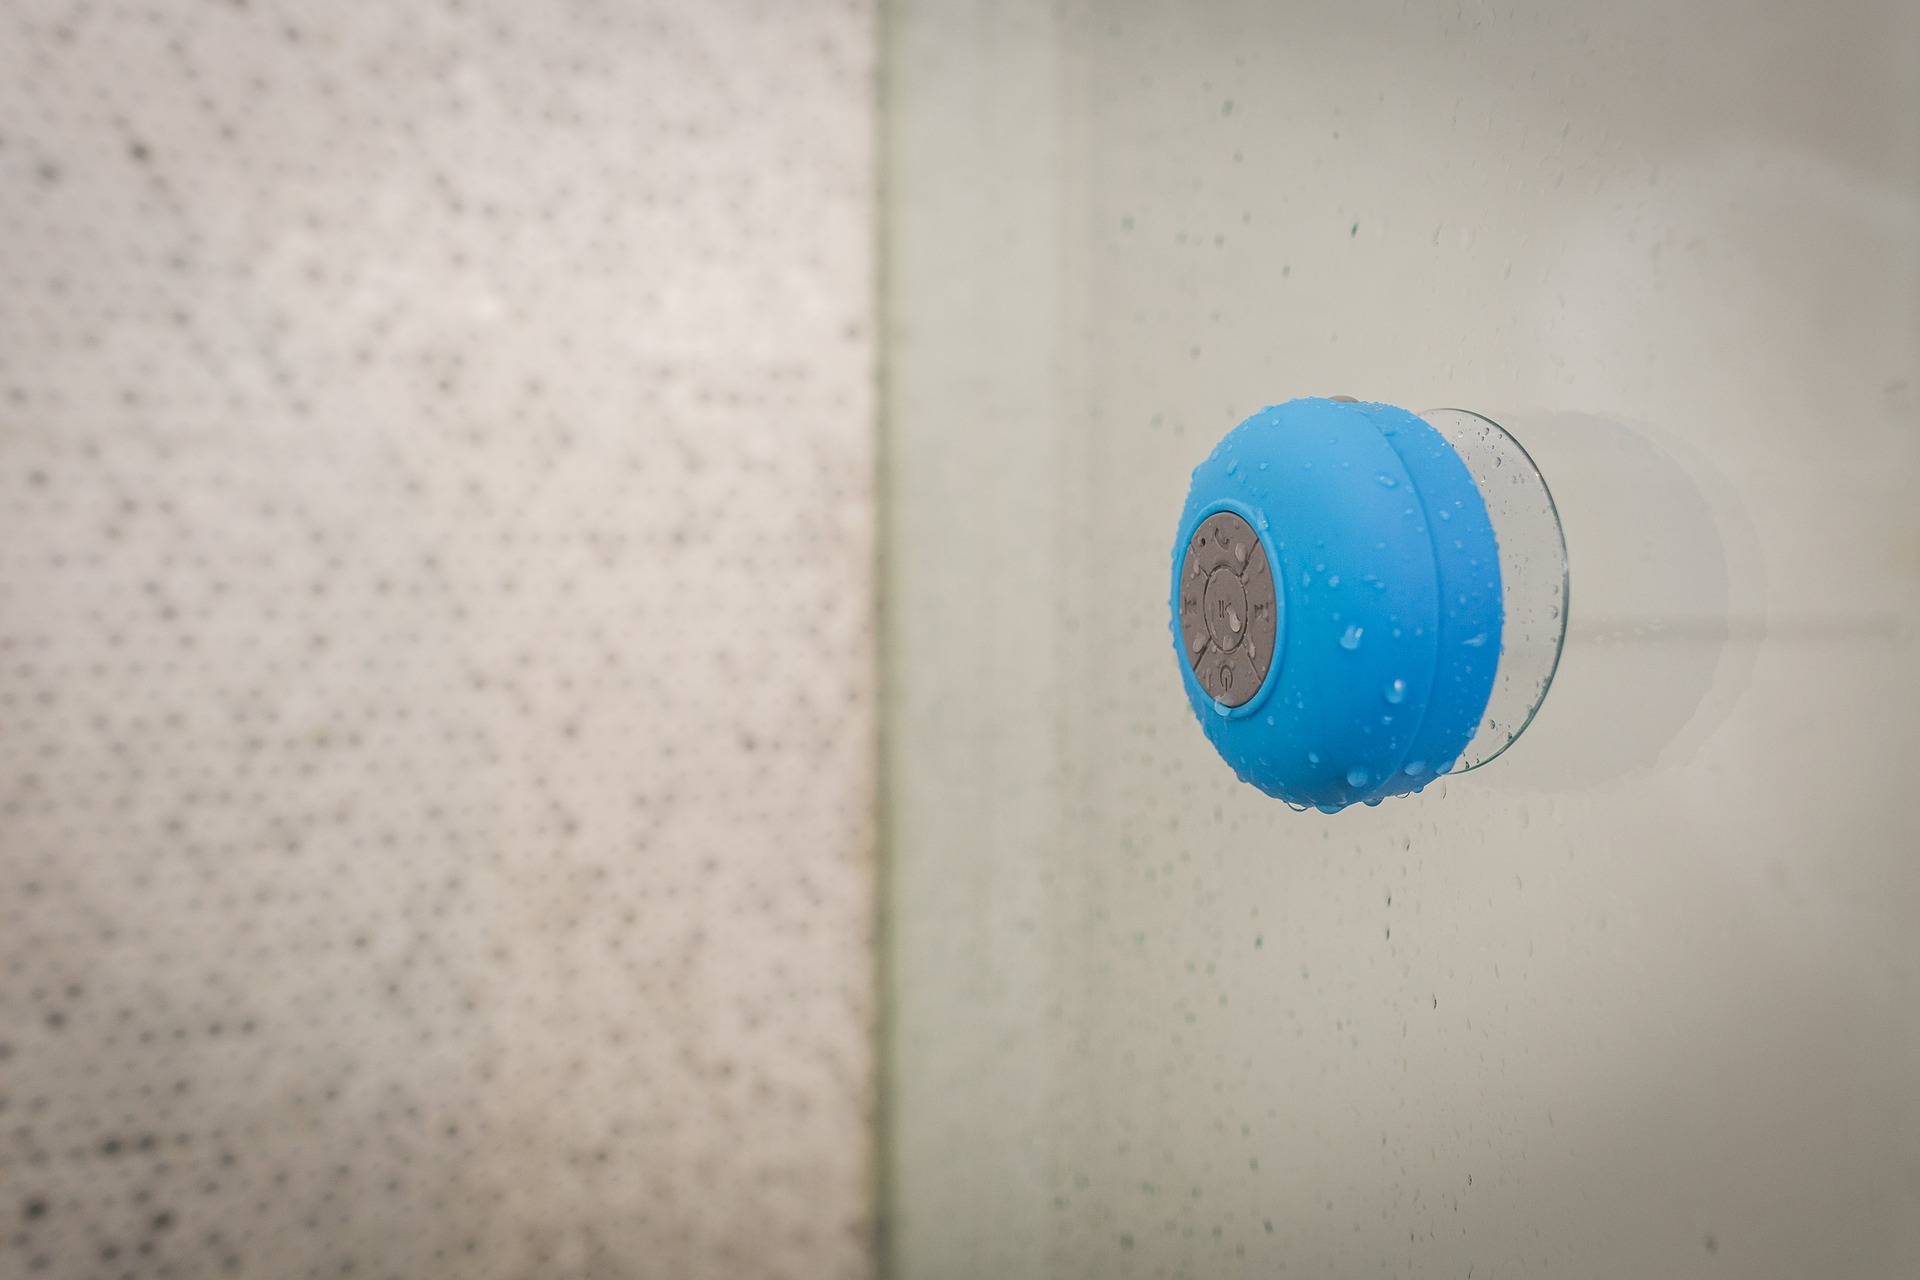 Blue waterproof bluetooth speaker